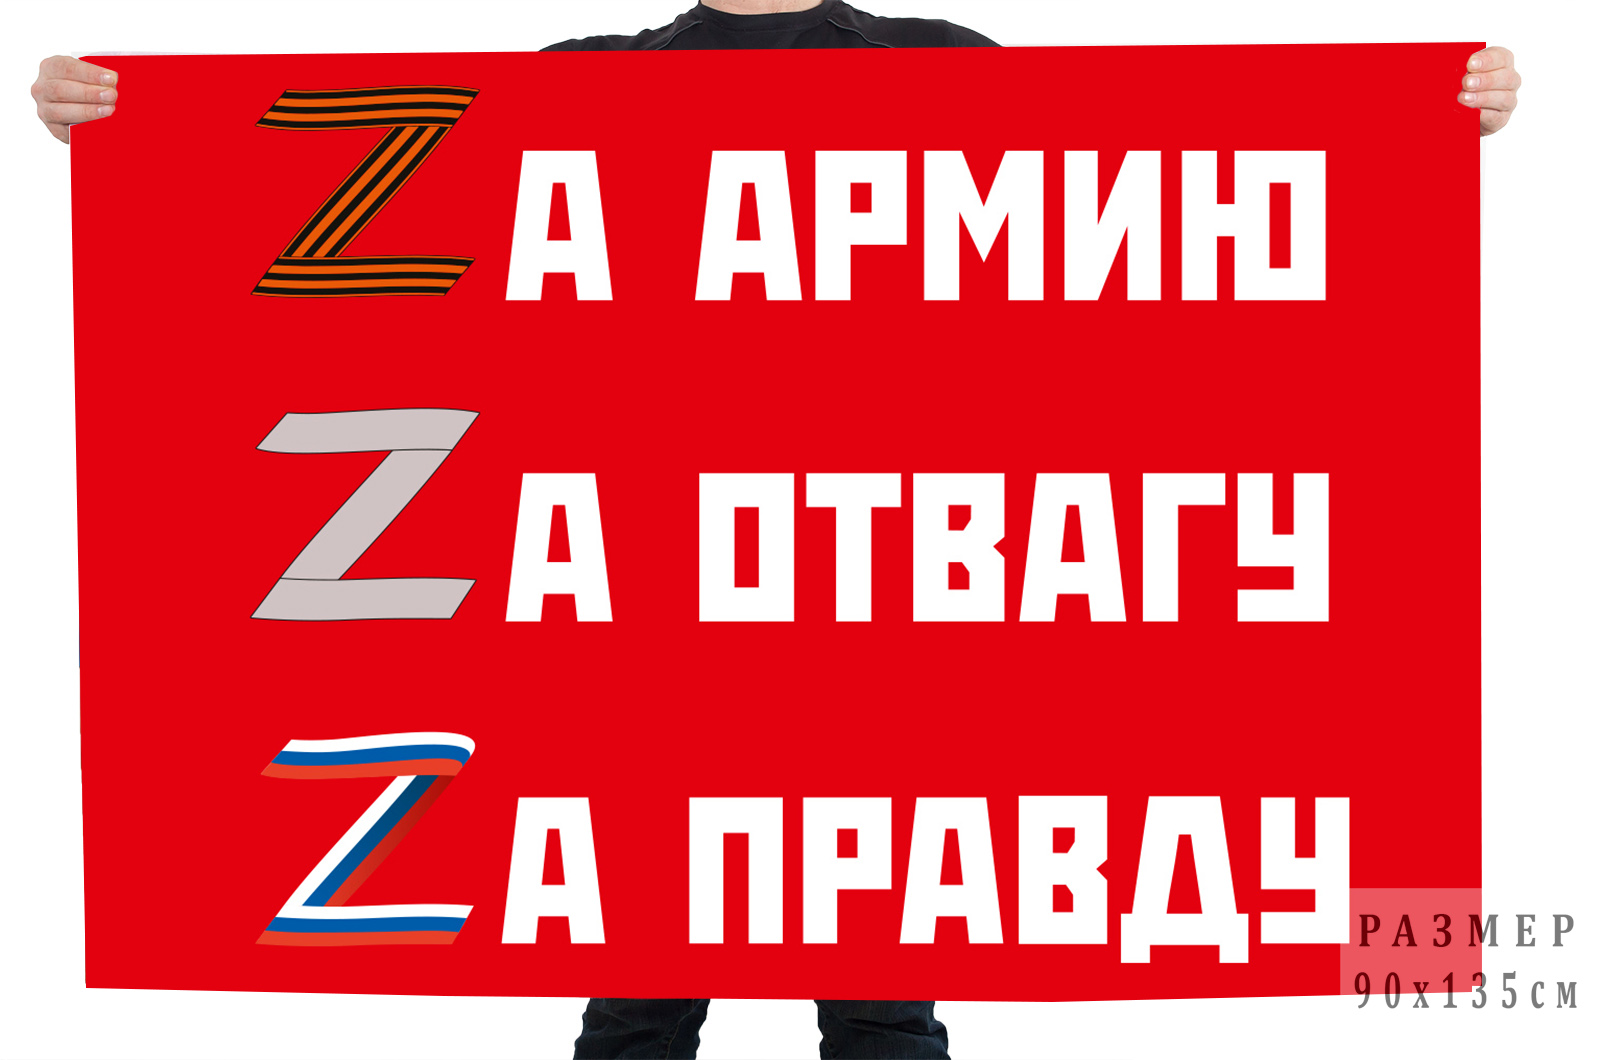 Флаг "Zа армию, Zа отвагу, Zа правду"